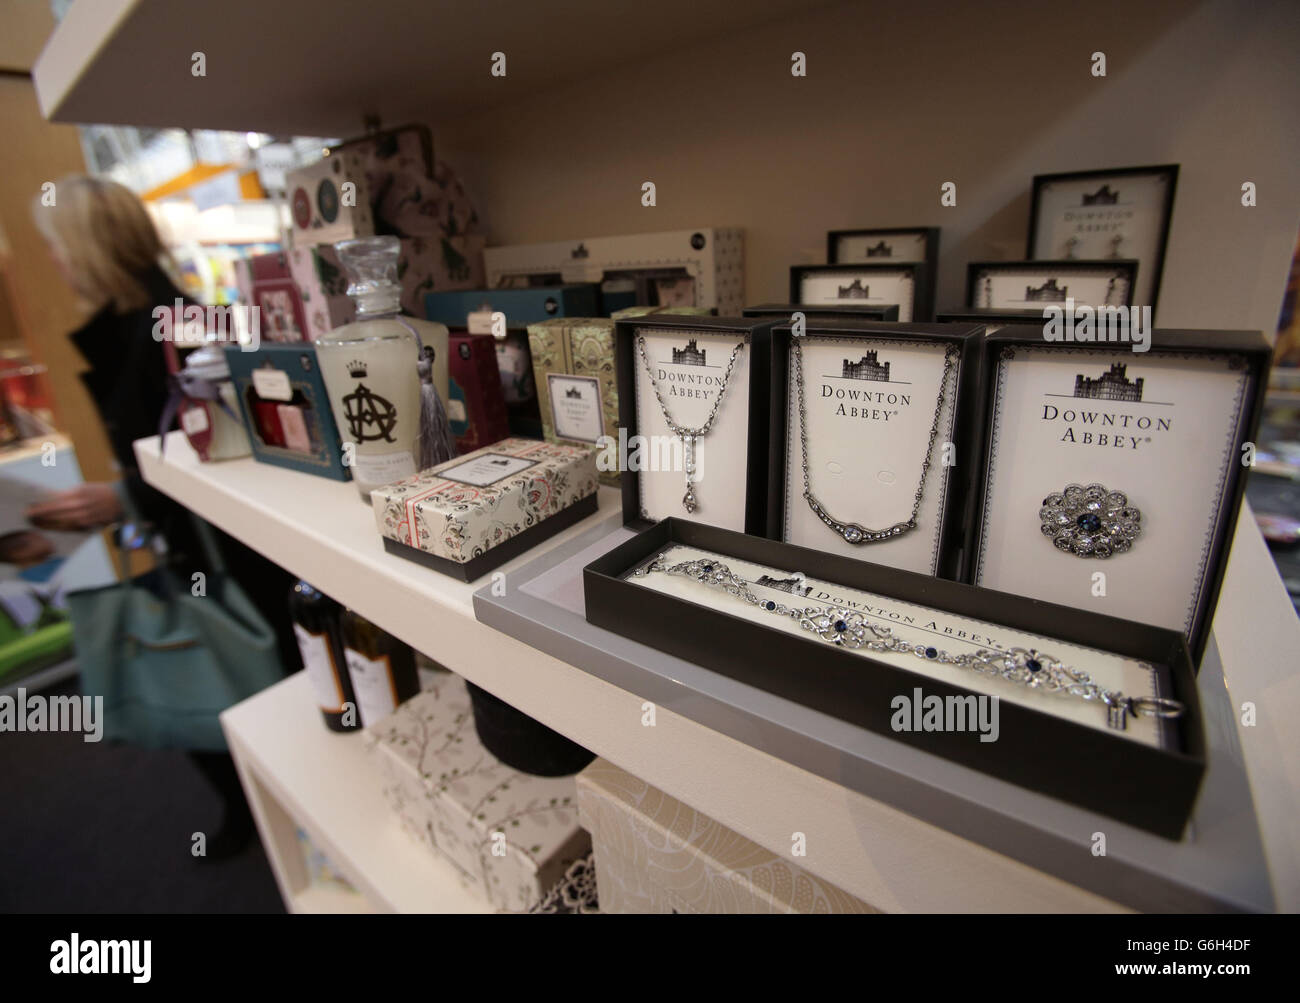 Les marchandises Downton Abbey sont exposées à l'exposition Brand Licensing Europe, à Olympia, dans l'ouest de Londres. Banque D'Images